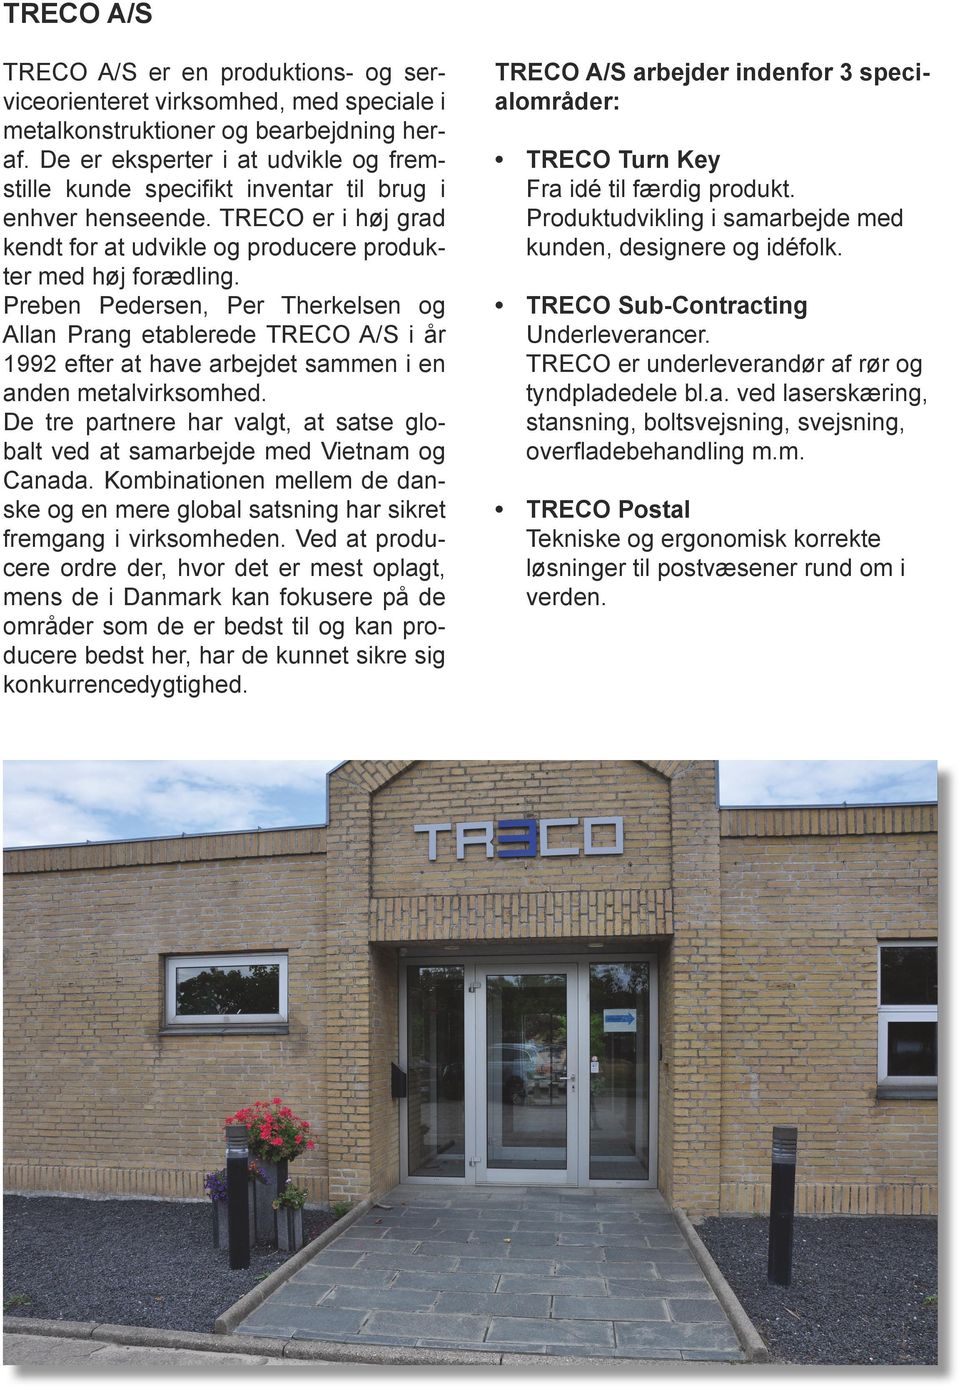 Preben Pedersen, Per Therkelsen og Allan Prang etablerede TRECO A/S i år 1992 efter at have arbejdet sammen i en anden metalvirksomhed.